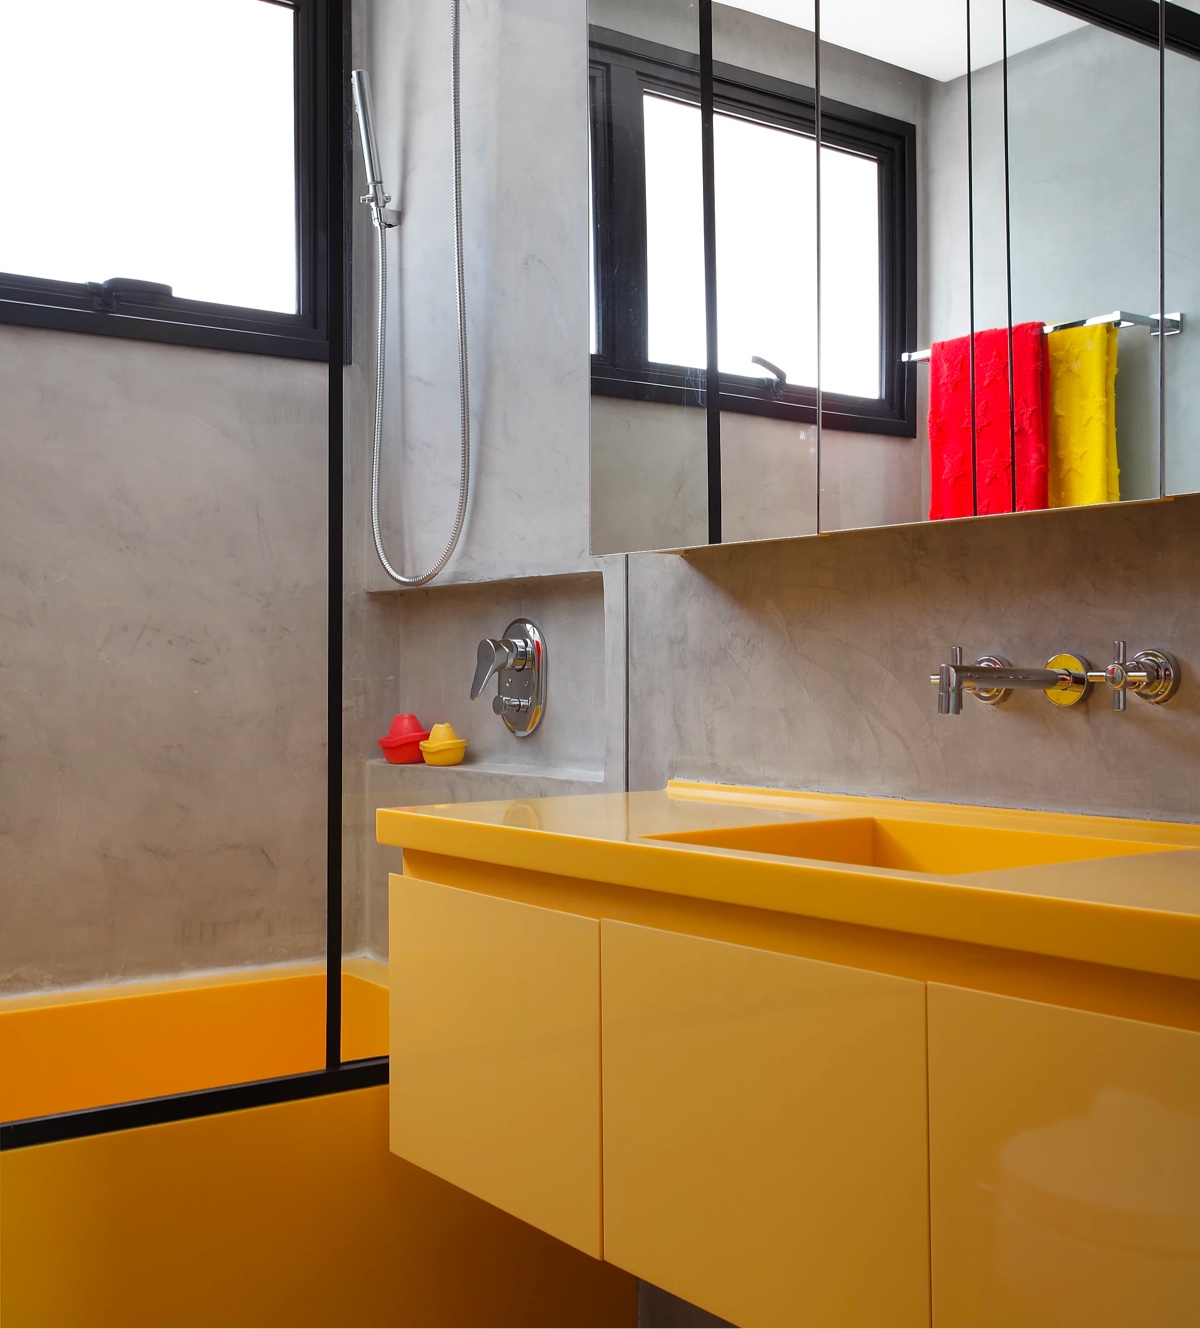 hình ảnh một góc phòng tắm với trần, tường bê tông, bồn rửa màu vàng chanh nổi bật